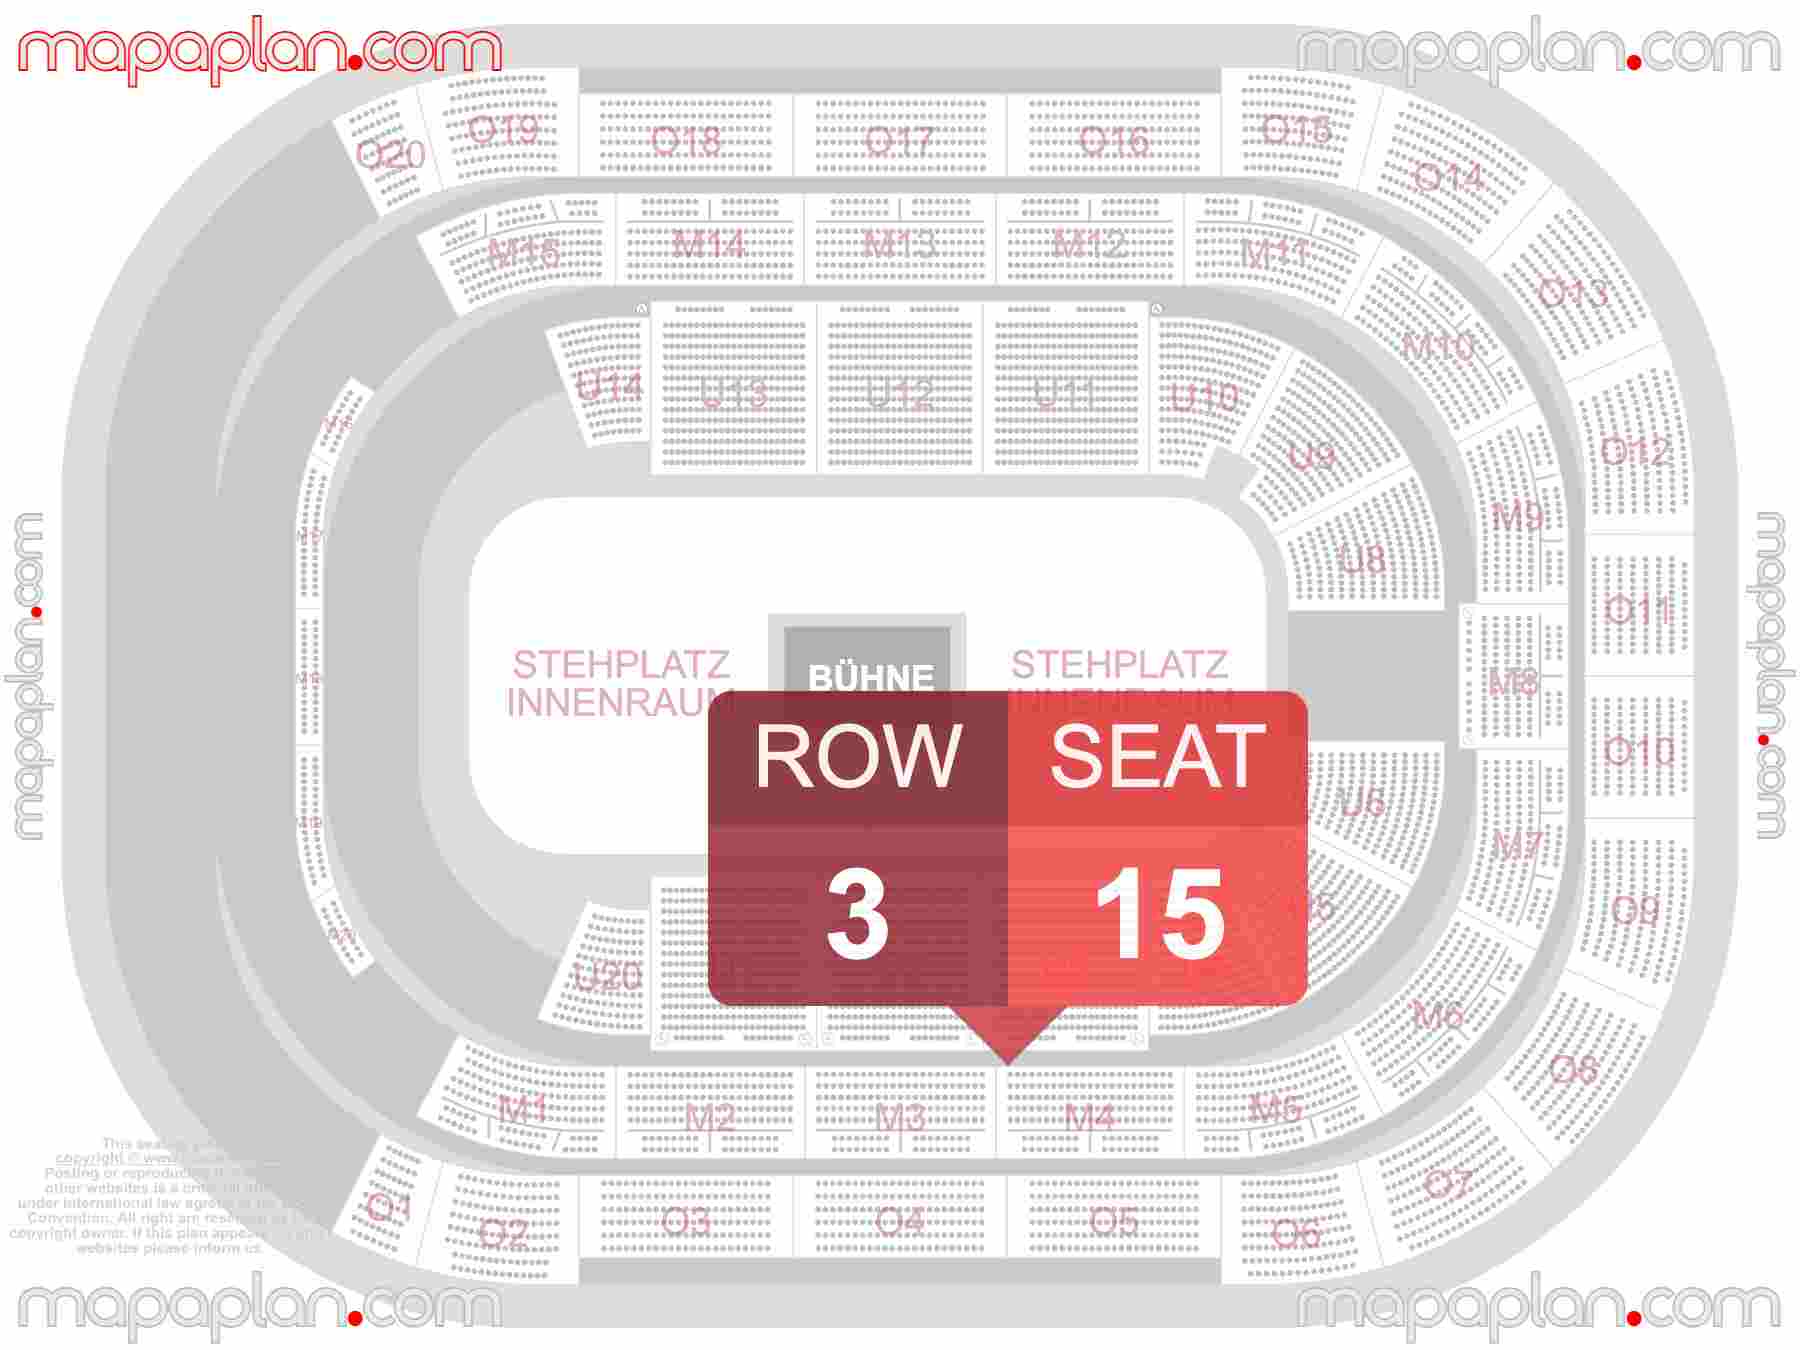 Hannover ZAG Arena seating plan Concert 360 in the round stage Konzerte 360 Sitzplan mit Sitzplatznummerierung und Reihen inside capacity view arrangement map - Interactive virtual 3d best seats & rows detailed stadium image configuration layout